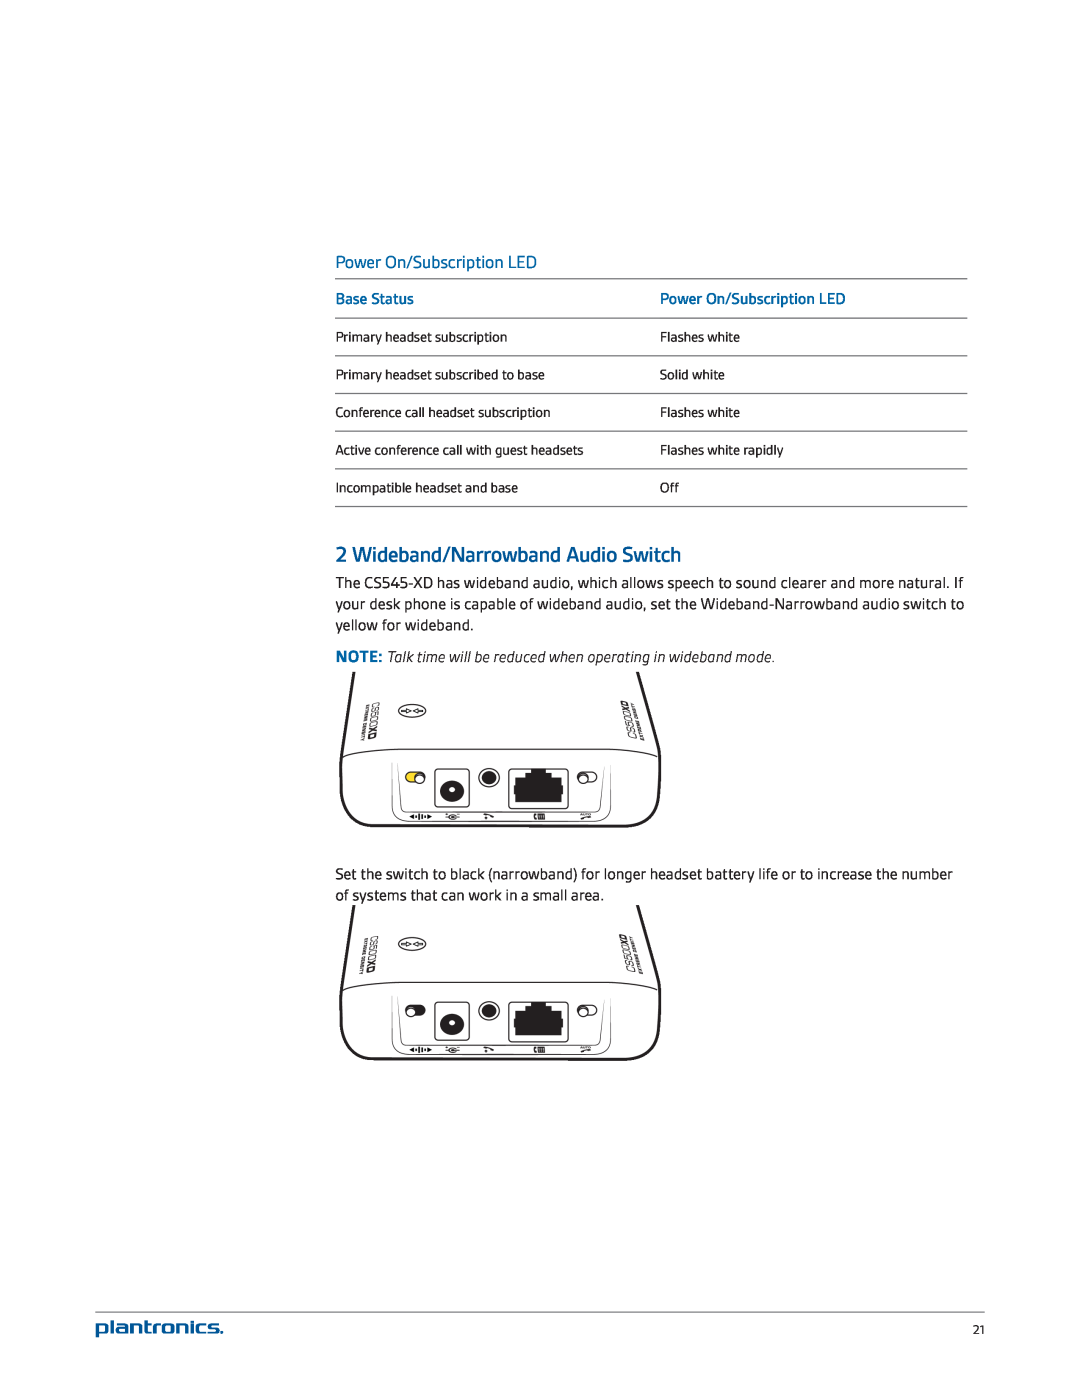 Plantronics CS545-XD manual Wideband/Narrowband Audio Switch, Power On/Subscription LED, Base Status 